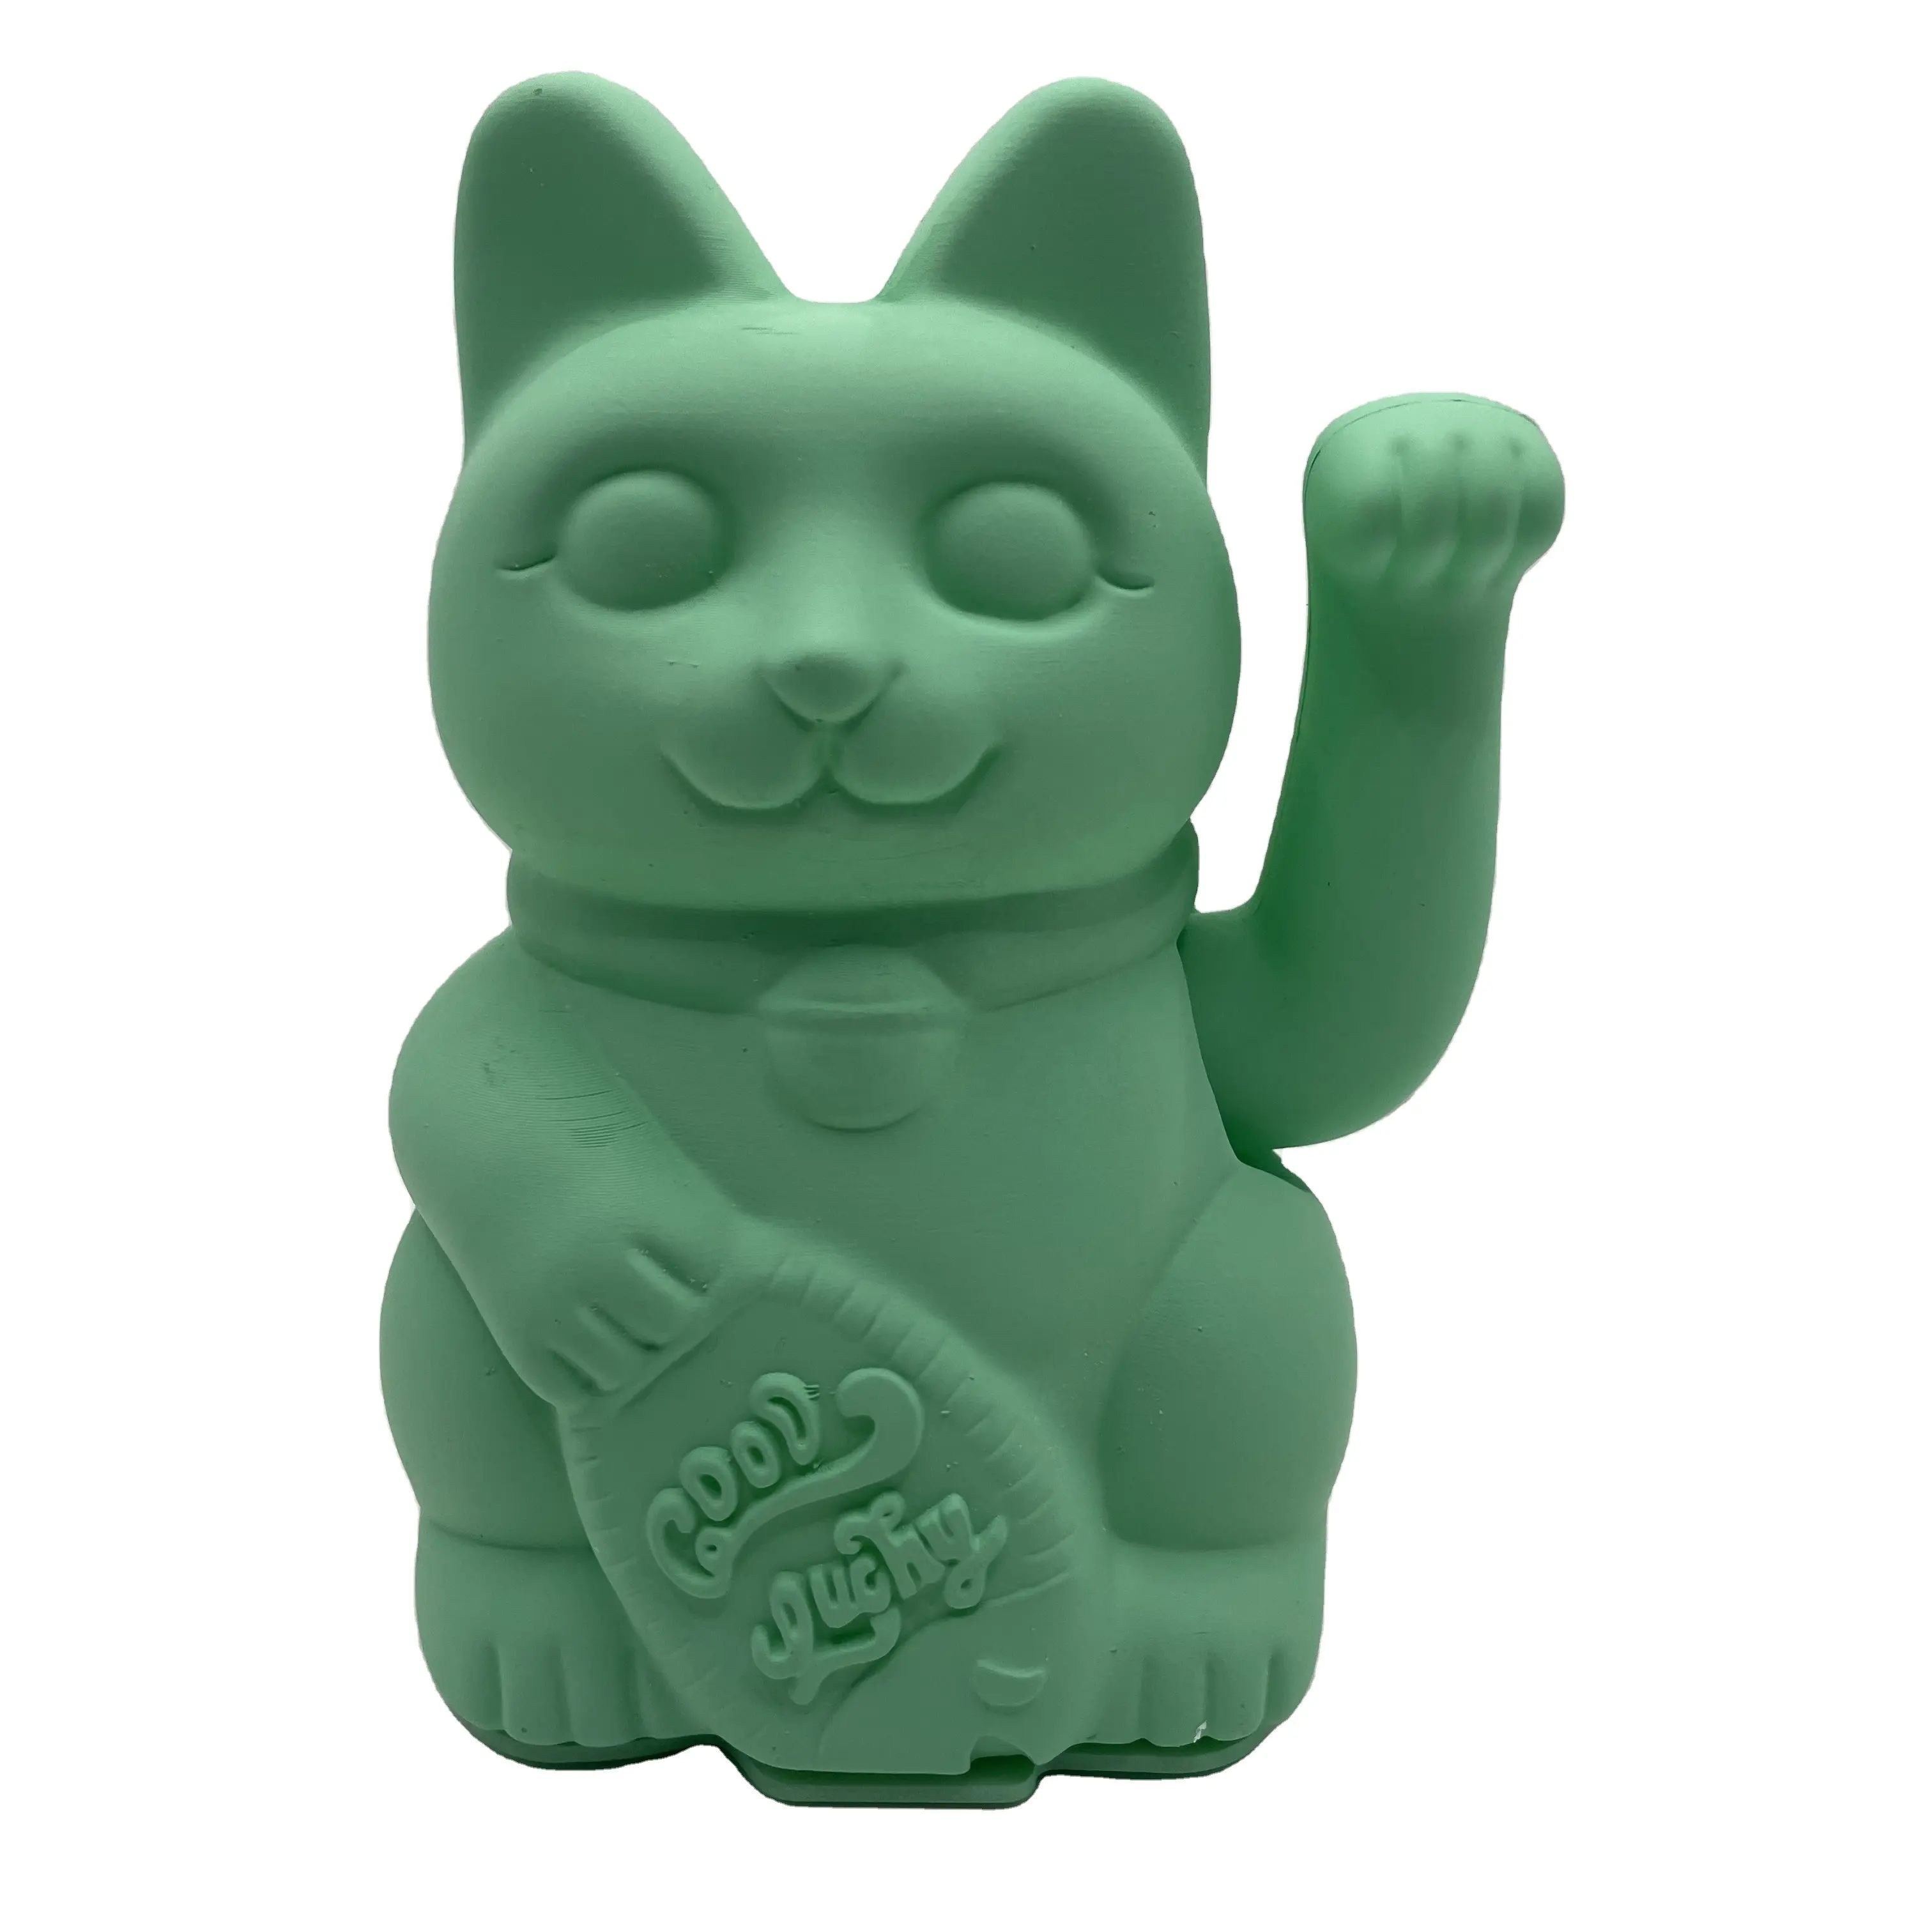 OEM venta al por mayor de plástico de color personalizado Maneki Neko hecho a mano gato de la suerte gato de La Fortuna decoración del hogar